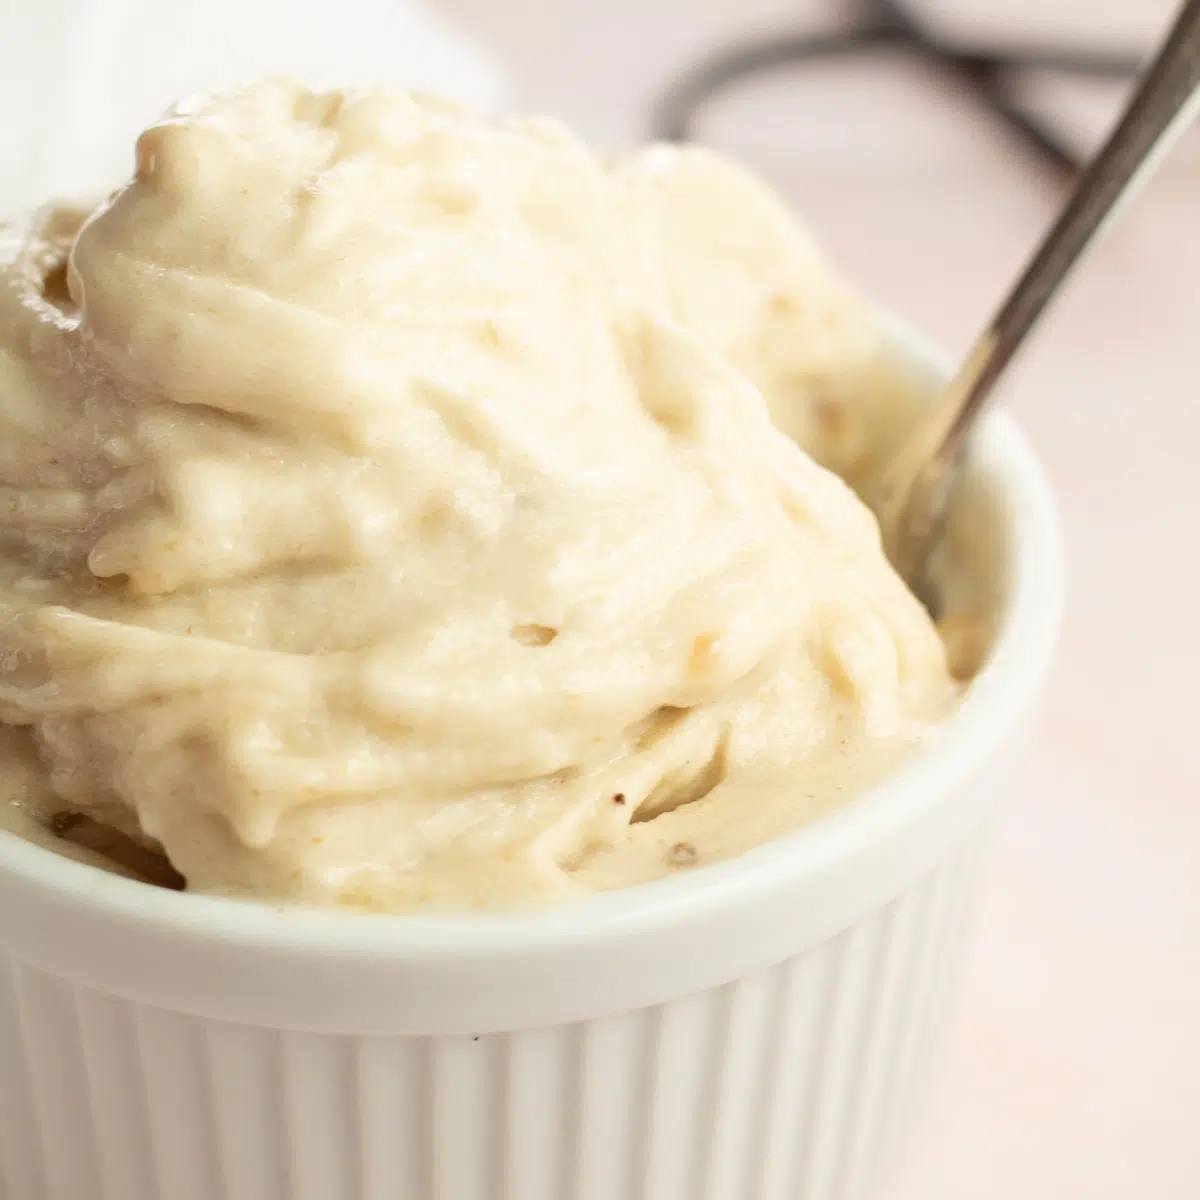 Bella crema alla vaniglia in ramekin bianco con cucchiaio nella ciotola e baccello di vaniglia in sottofondo.